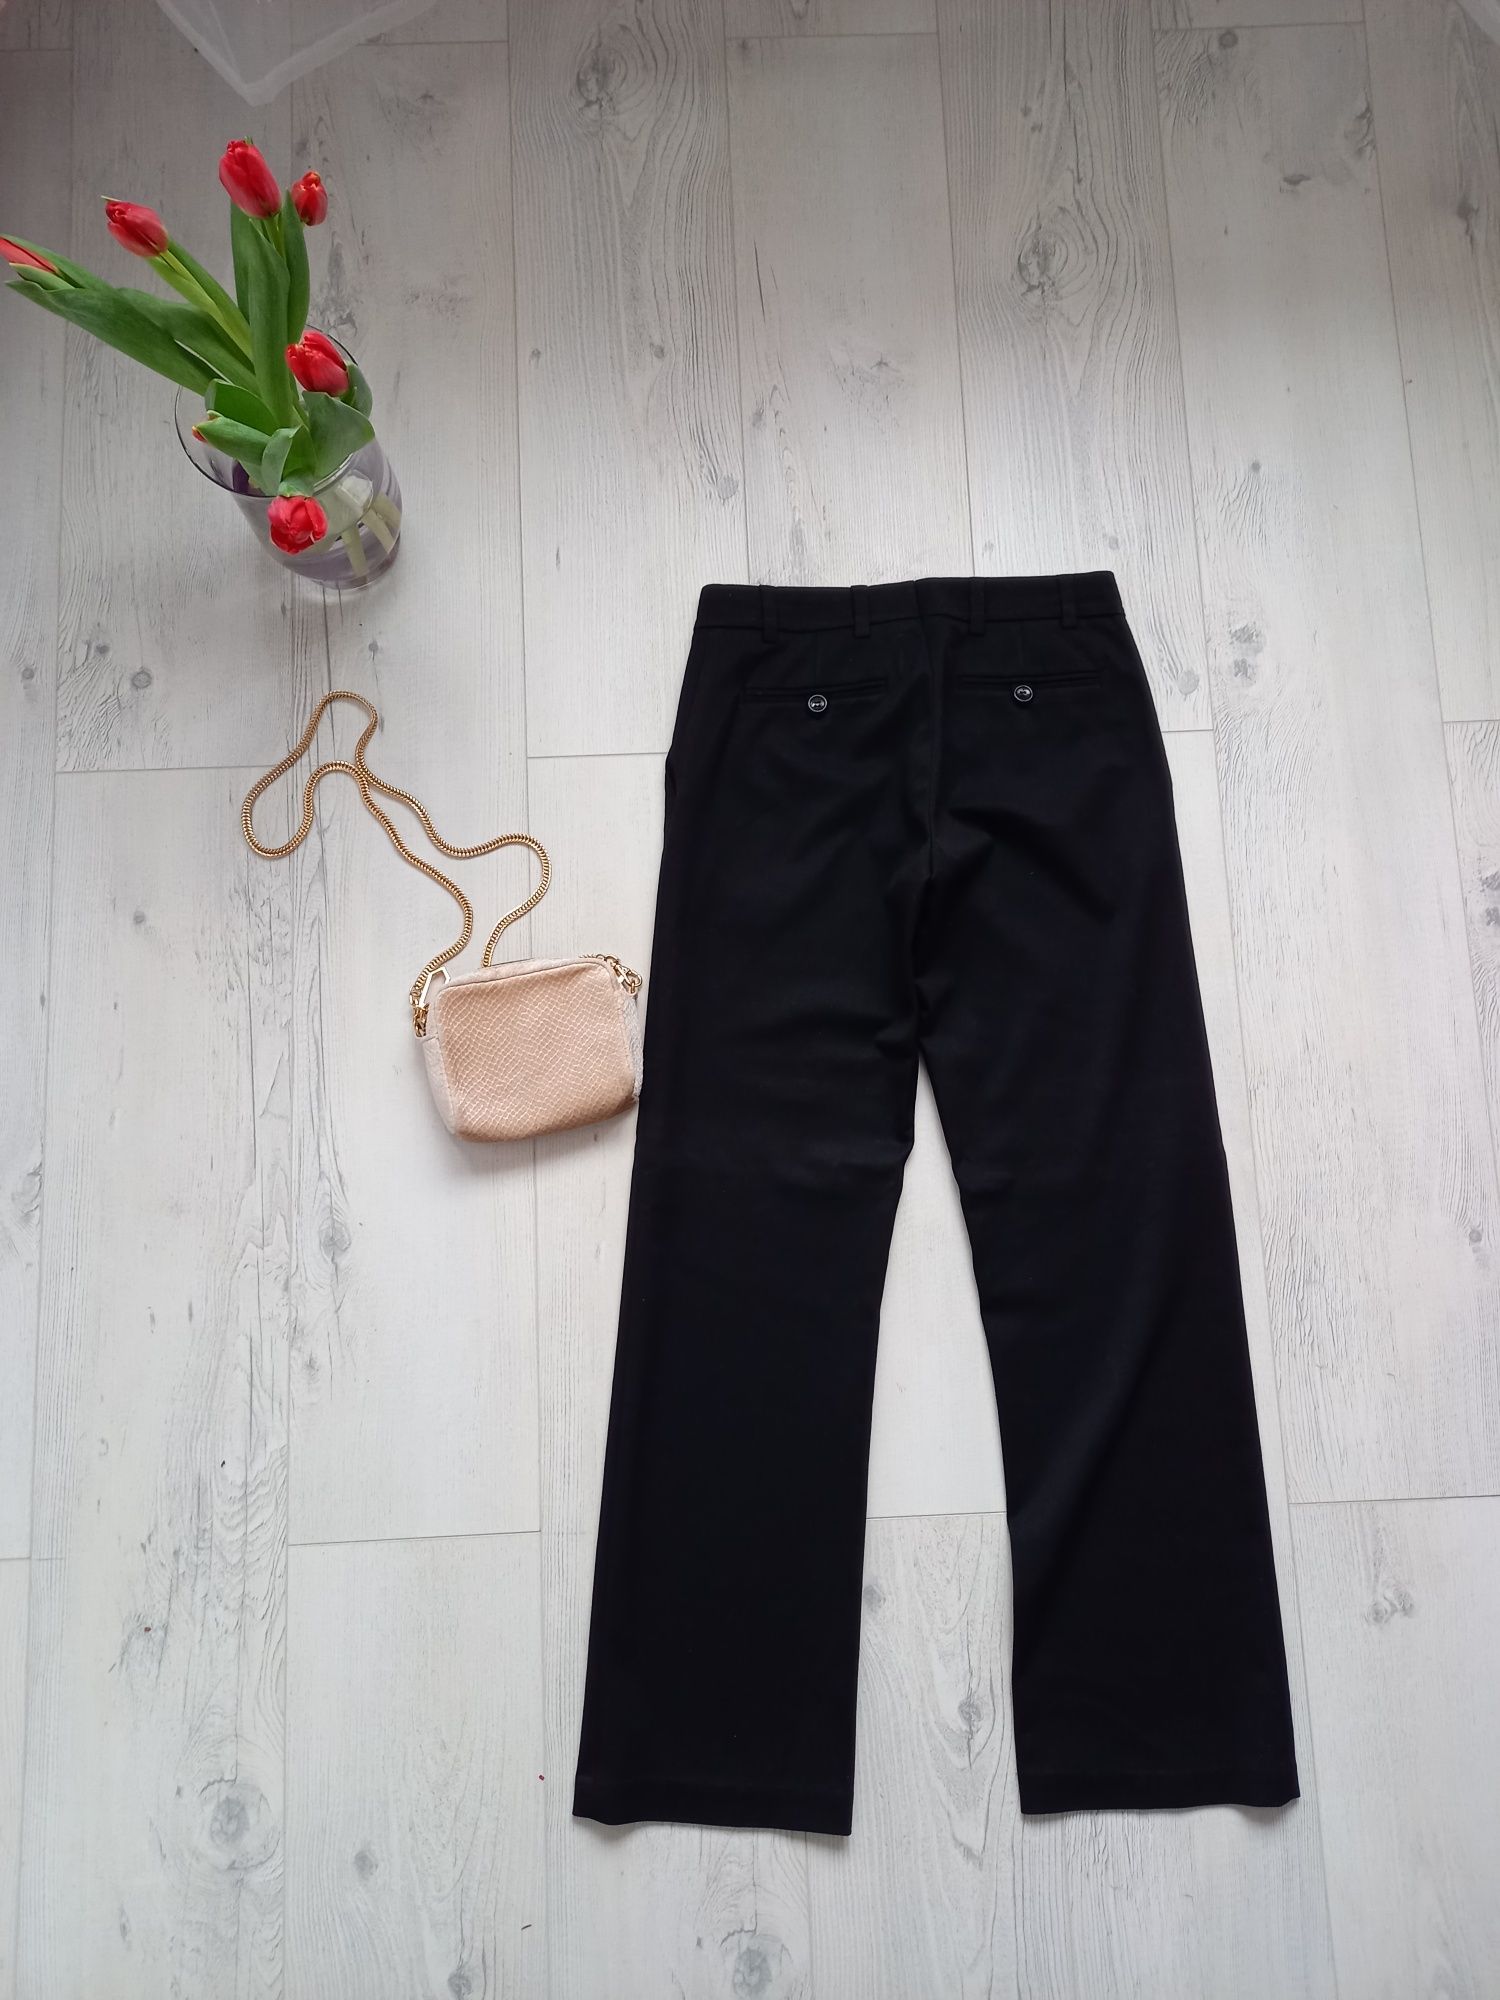 Eleganckie spodnie H&M czarne biurowe z kieszeniami proste klasyczne M